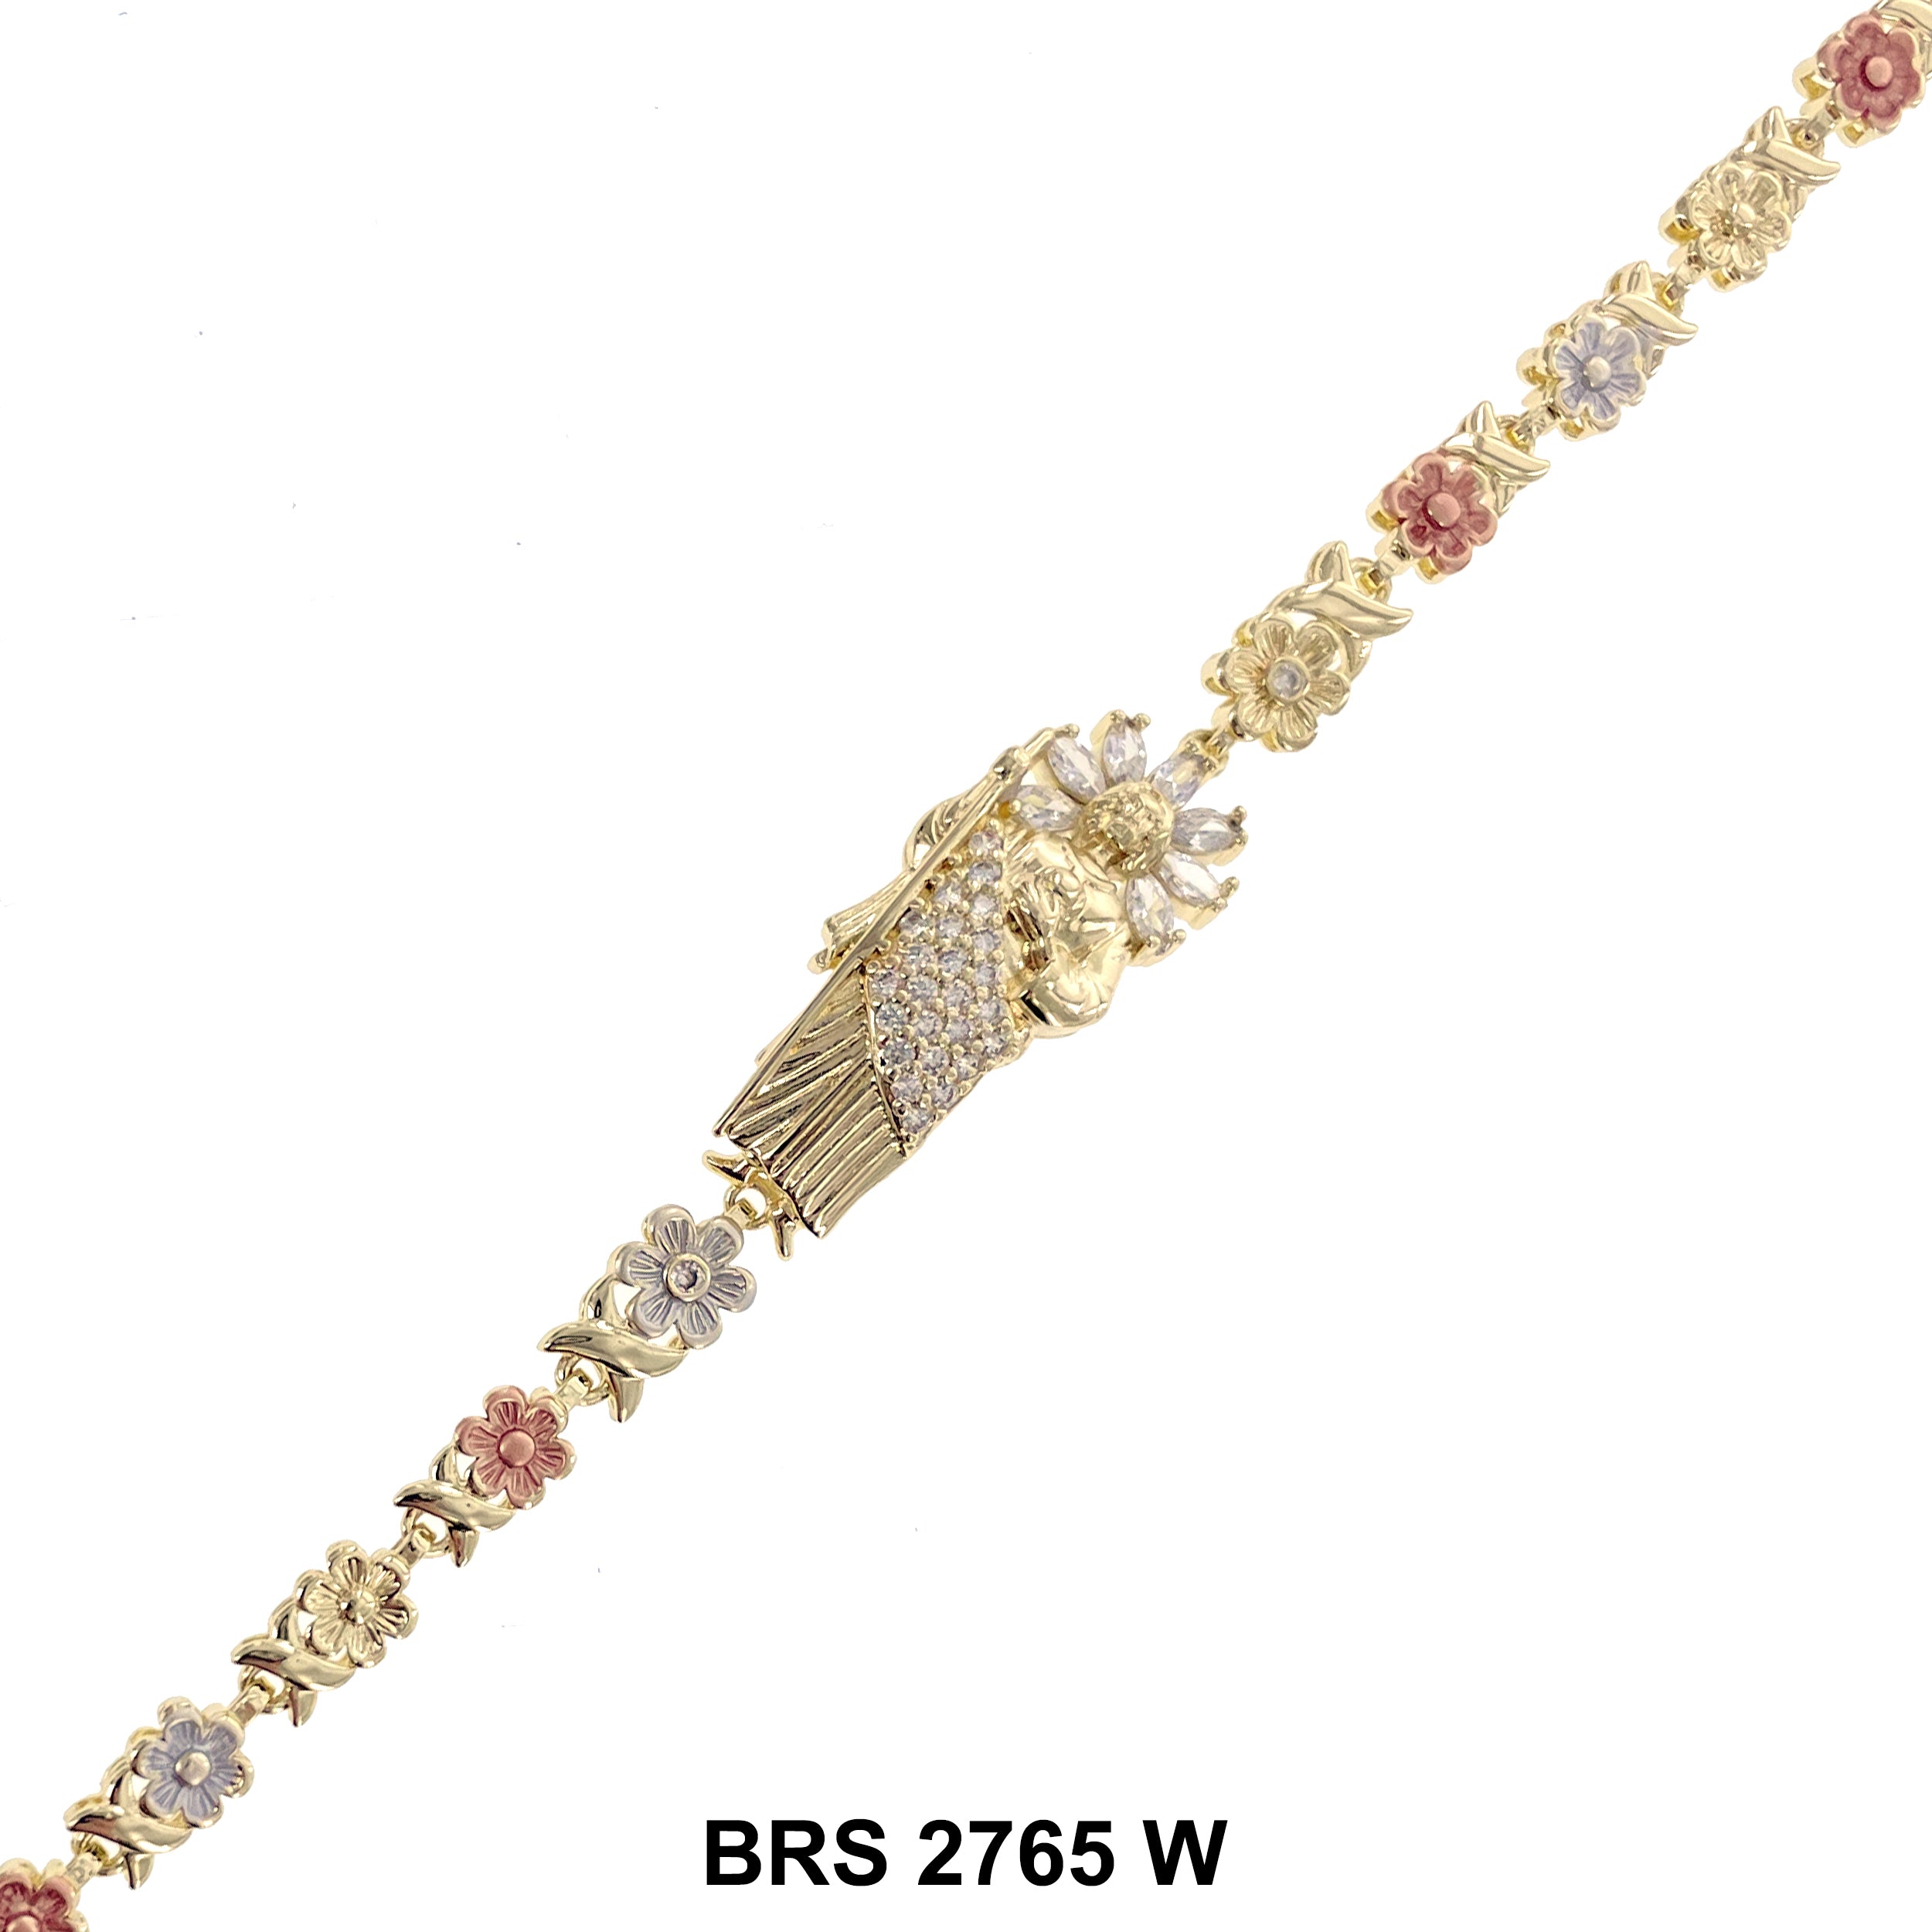 San Judas Bracelet BRS 2765 W